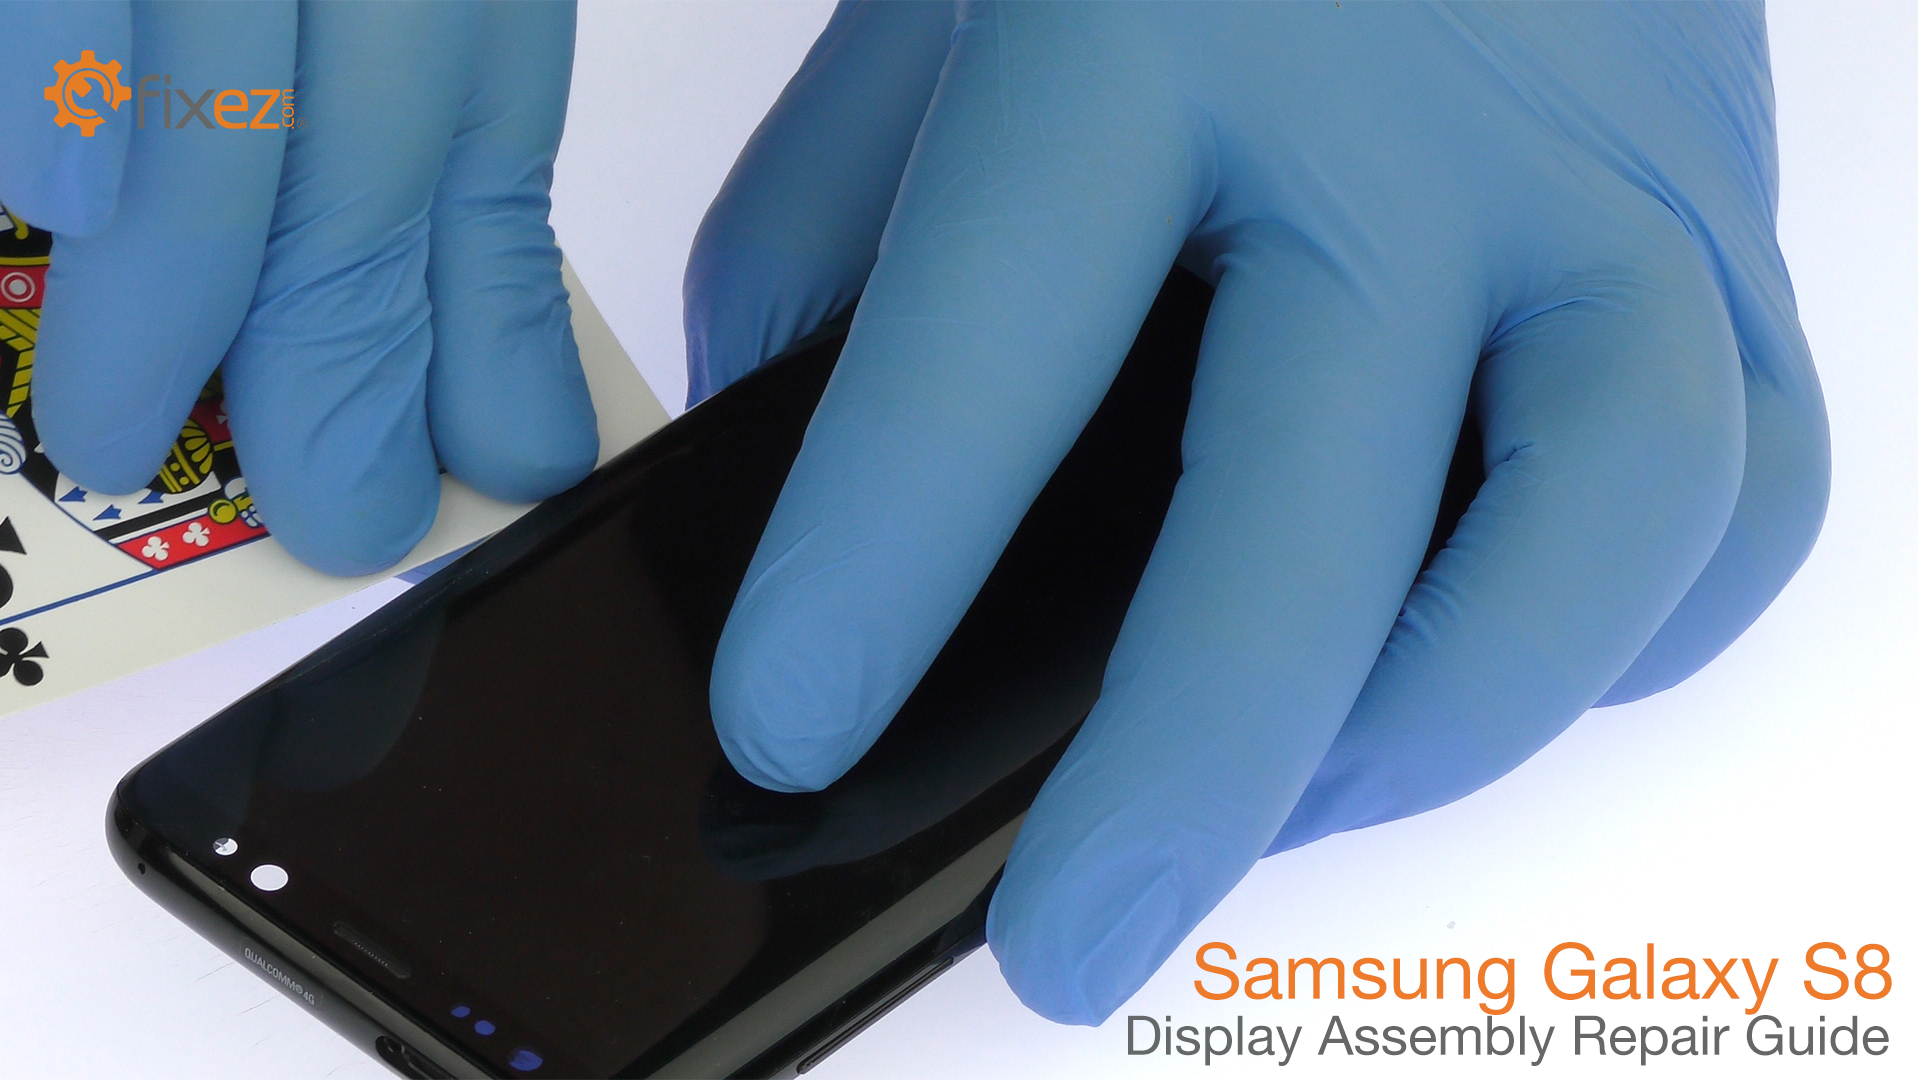 Samsung Galaxy S8 Display Assembly Repair